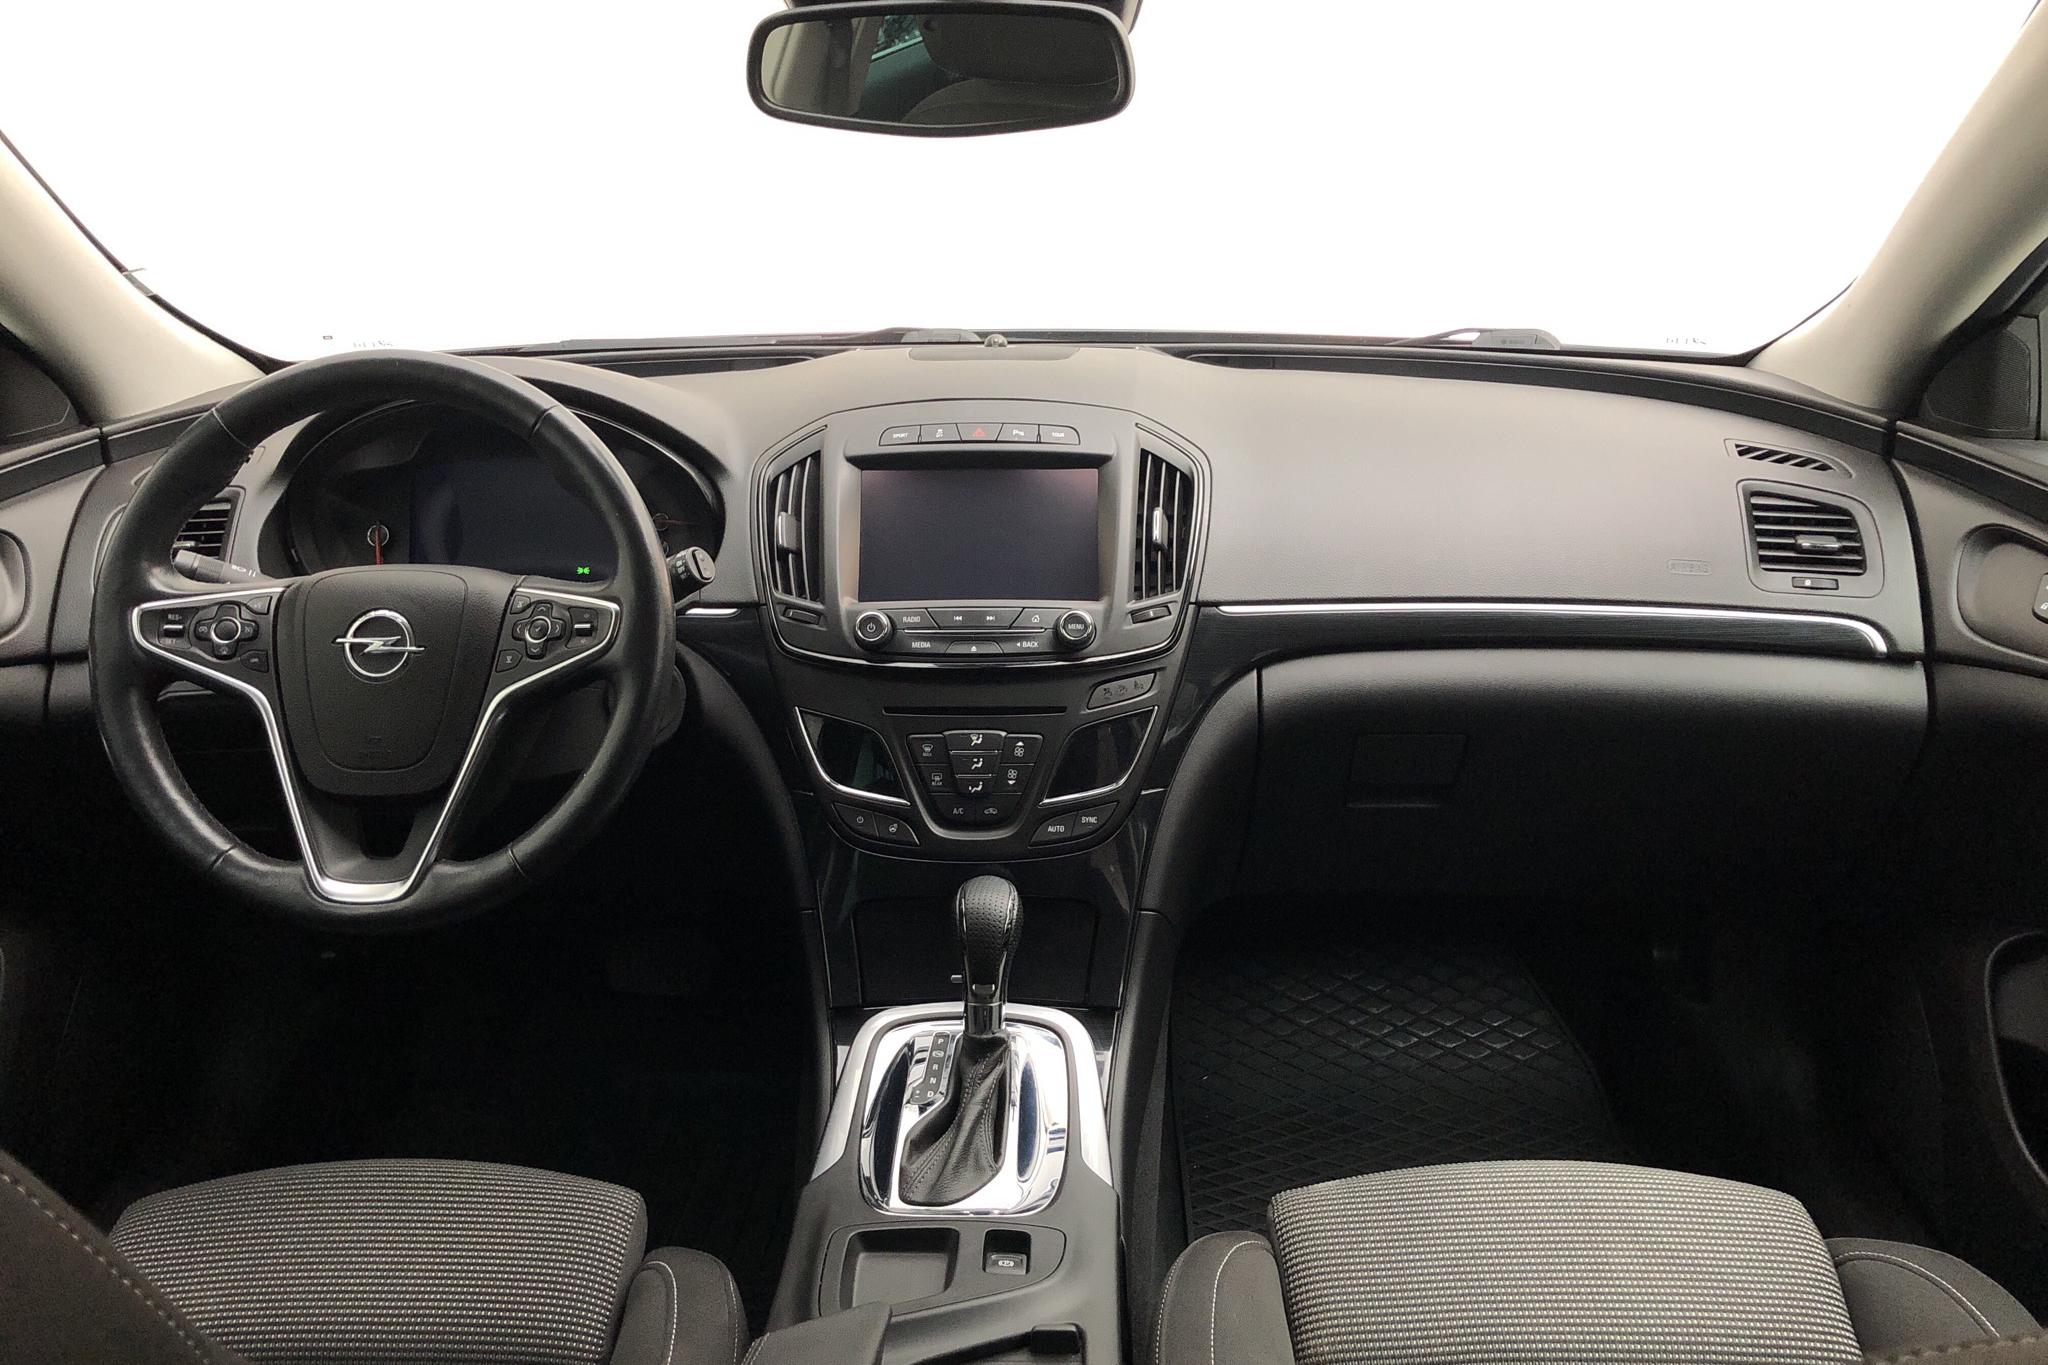 Opel Insignia 2.0 CDTI BiTurbo 4x4 Sports Tourer (195hk) - 13 608 mil - Automat - svart - 2015